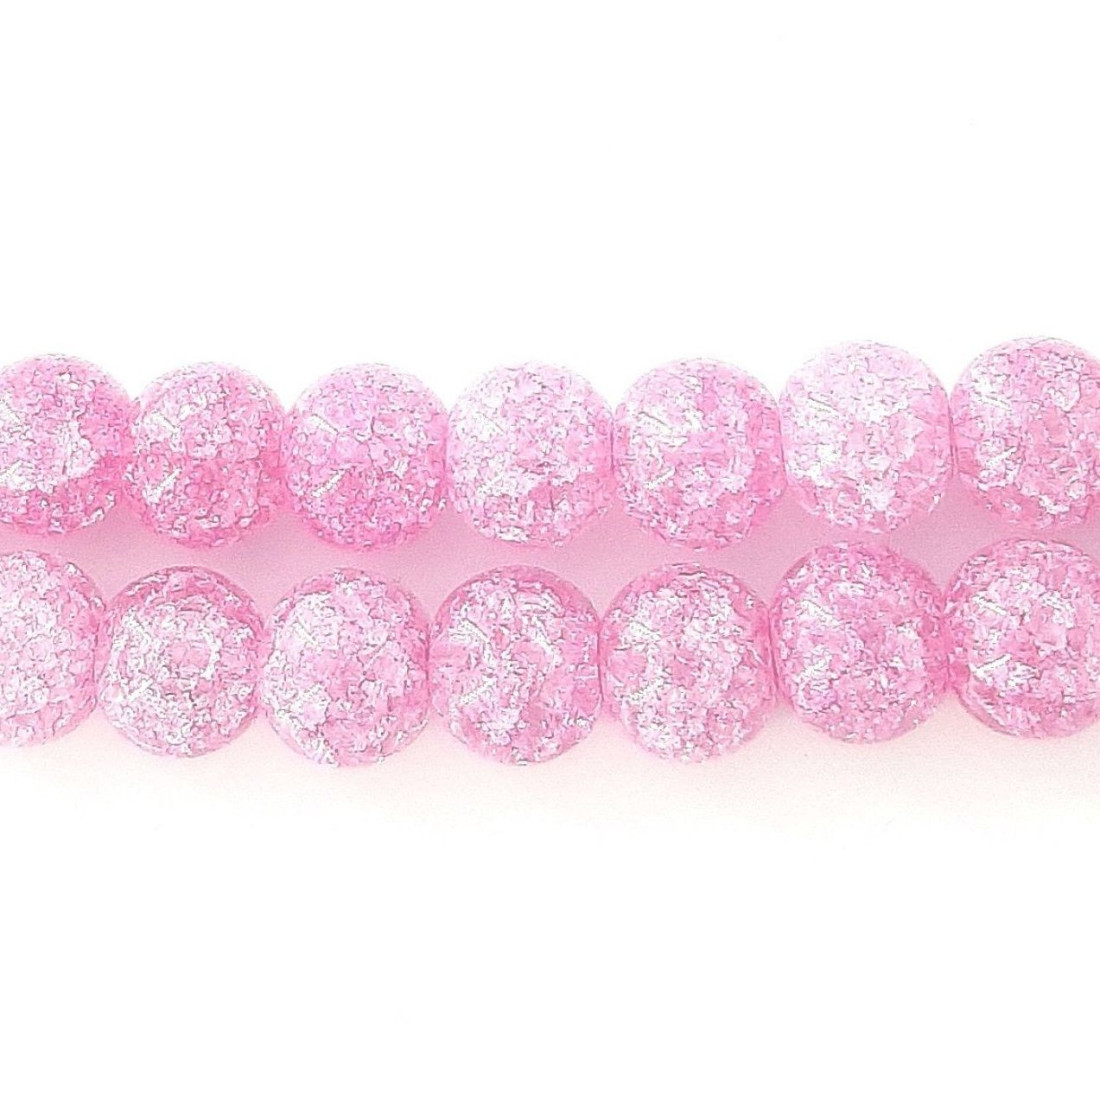 Fil de 46 perles rondes 8mm 8 mm en cristal de roche craquelés rose violet clair